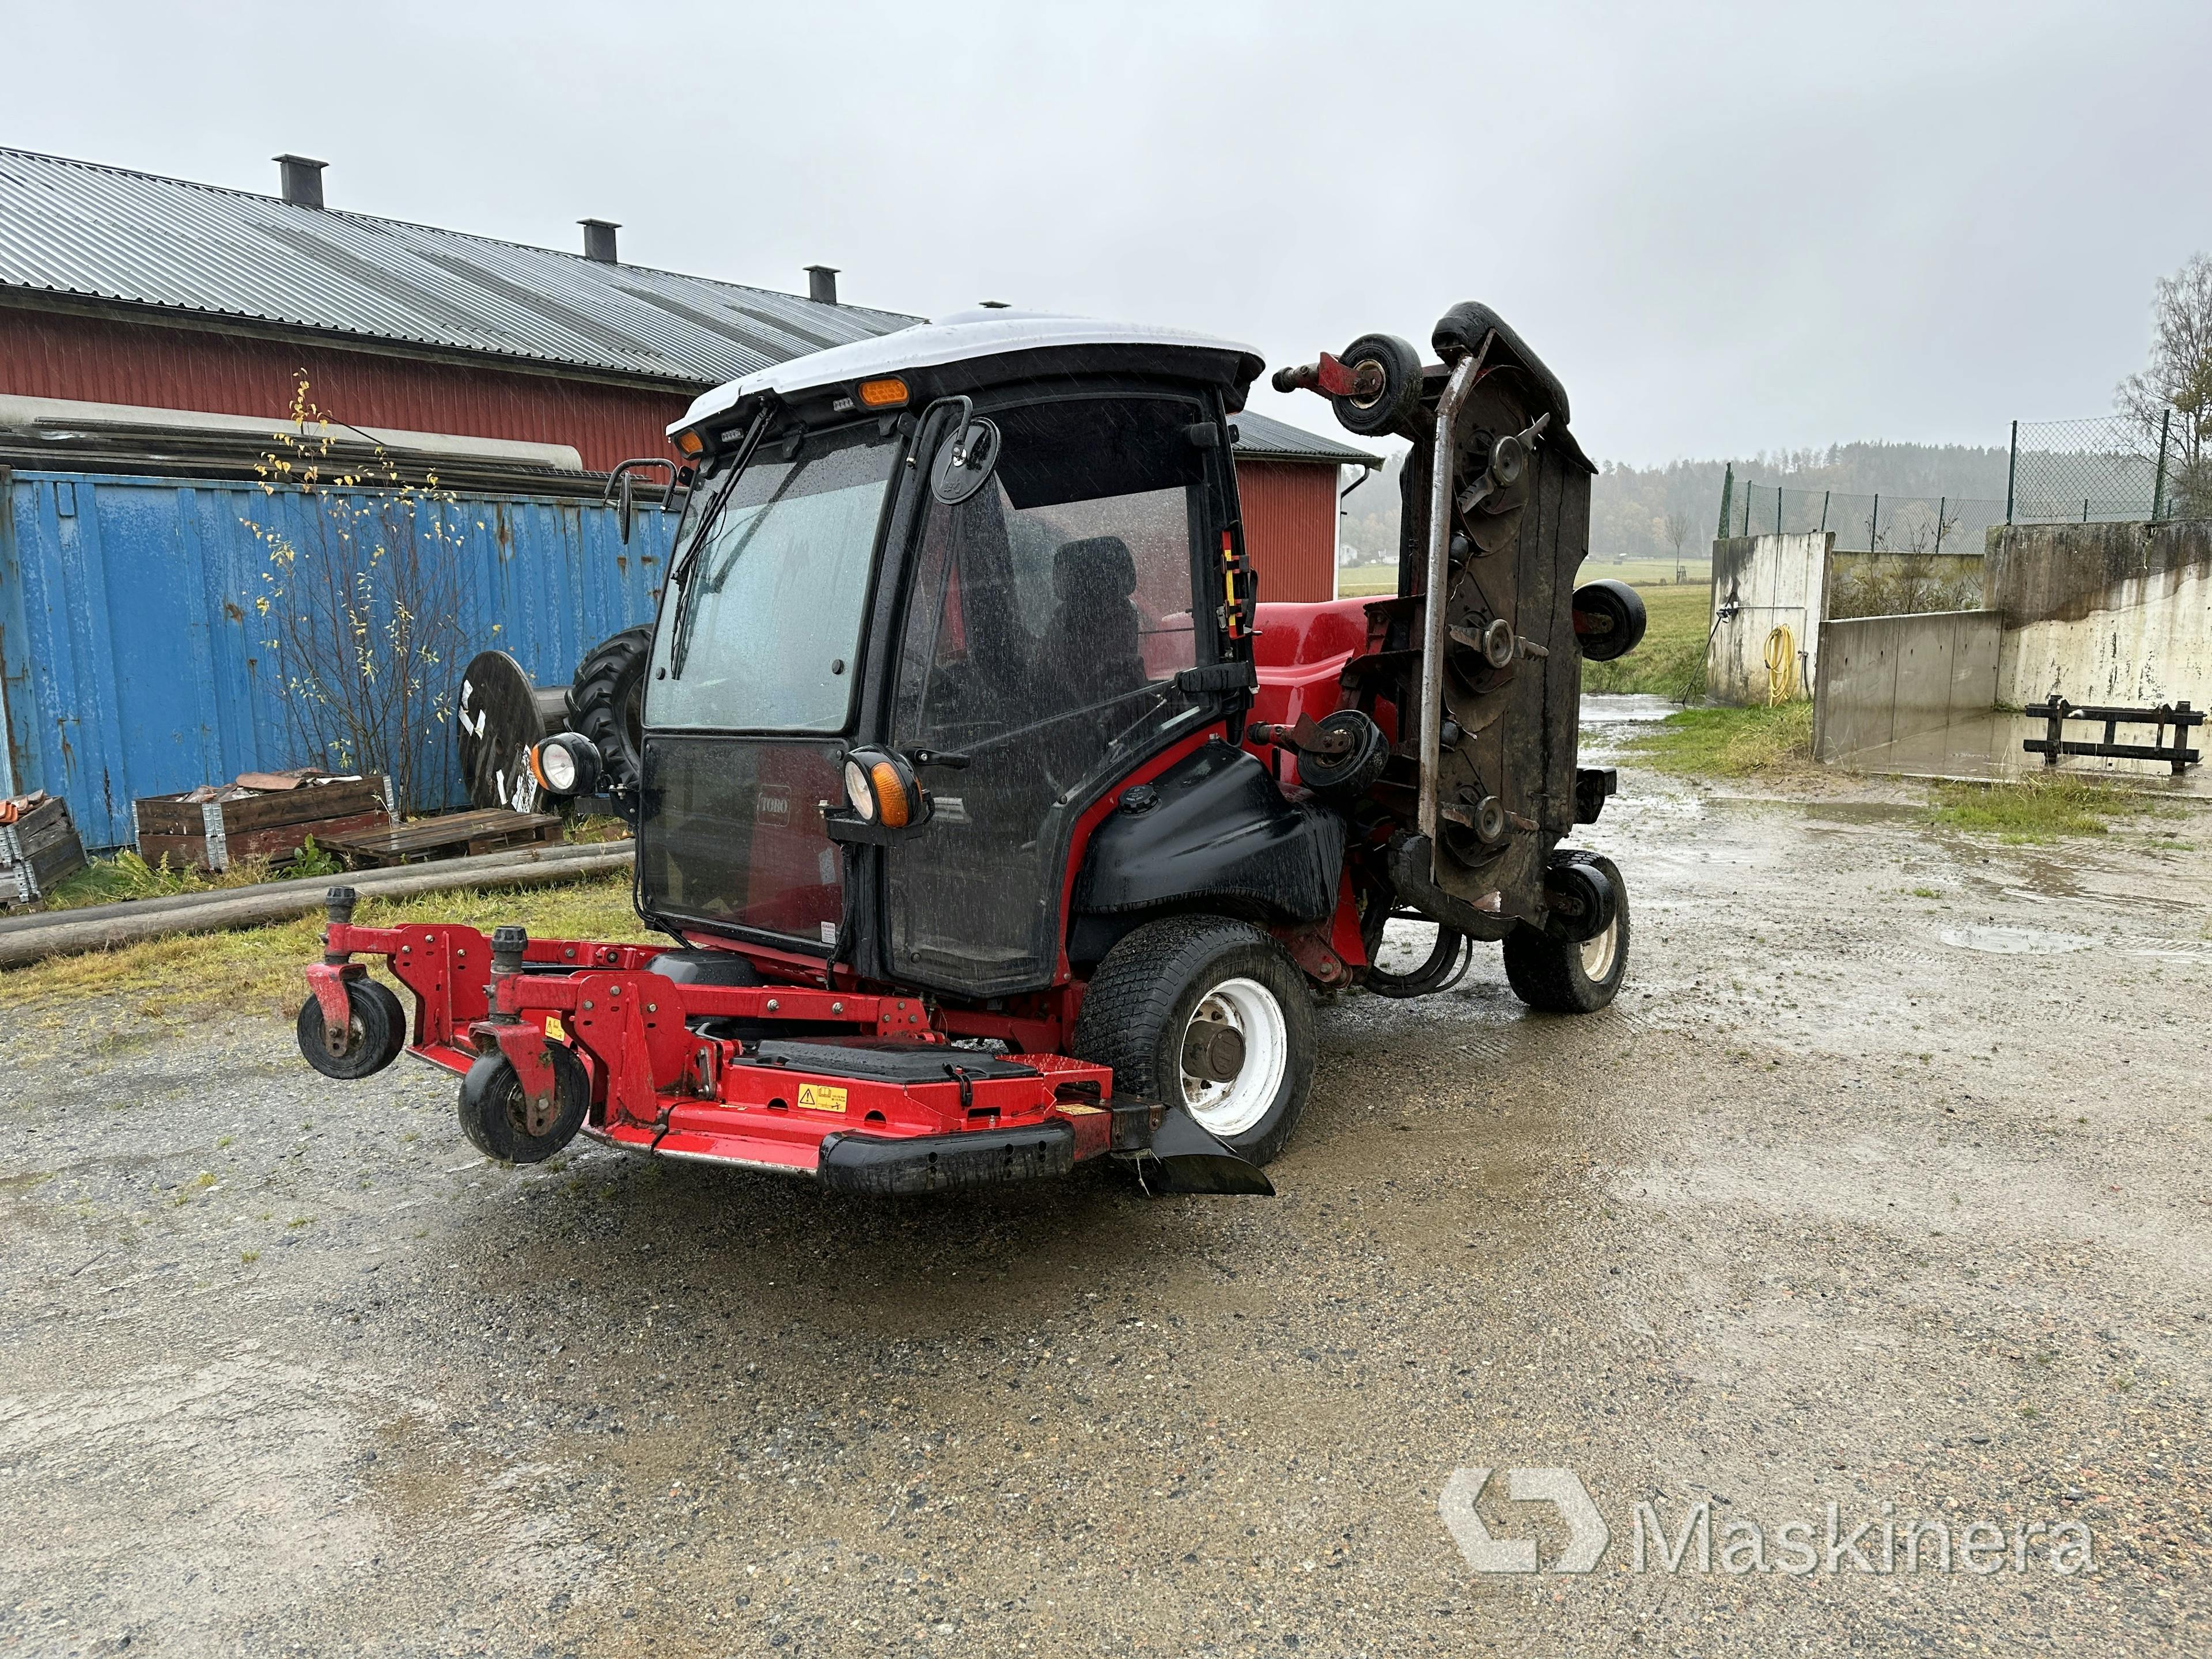 Rotary mower / Ruffle mower TORO Groundmaster 5910-D